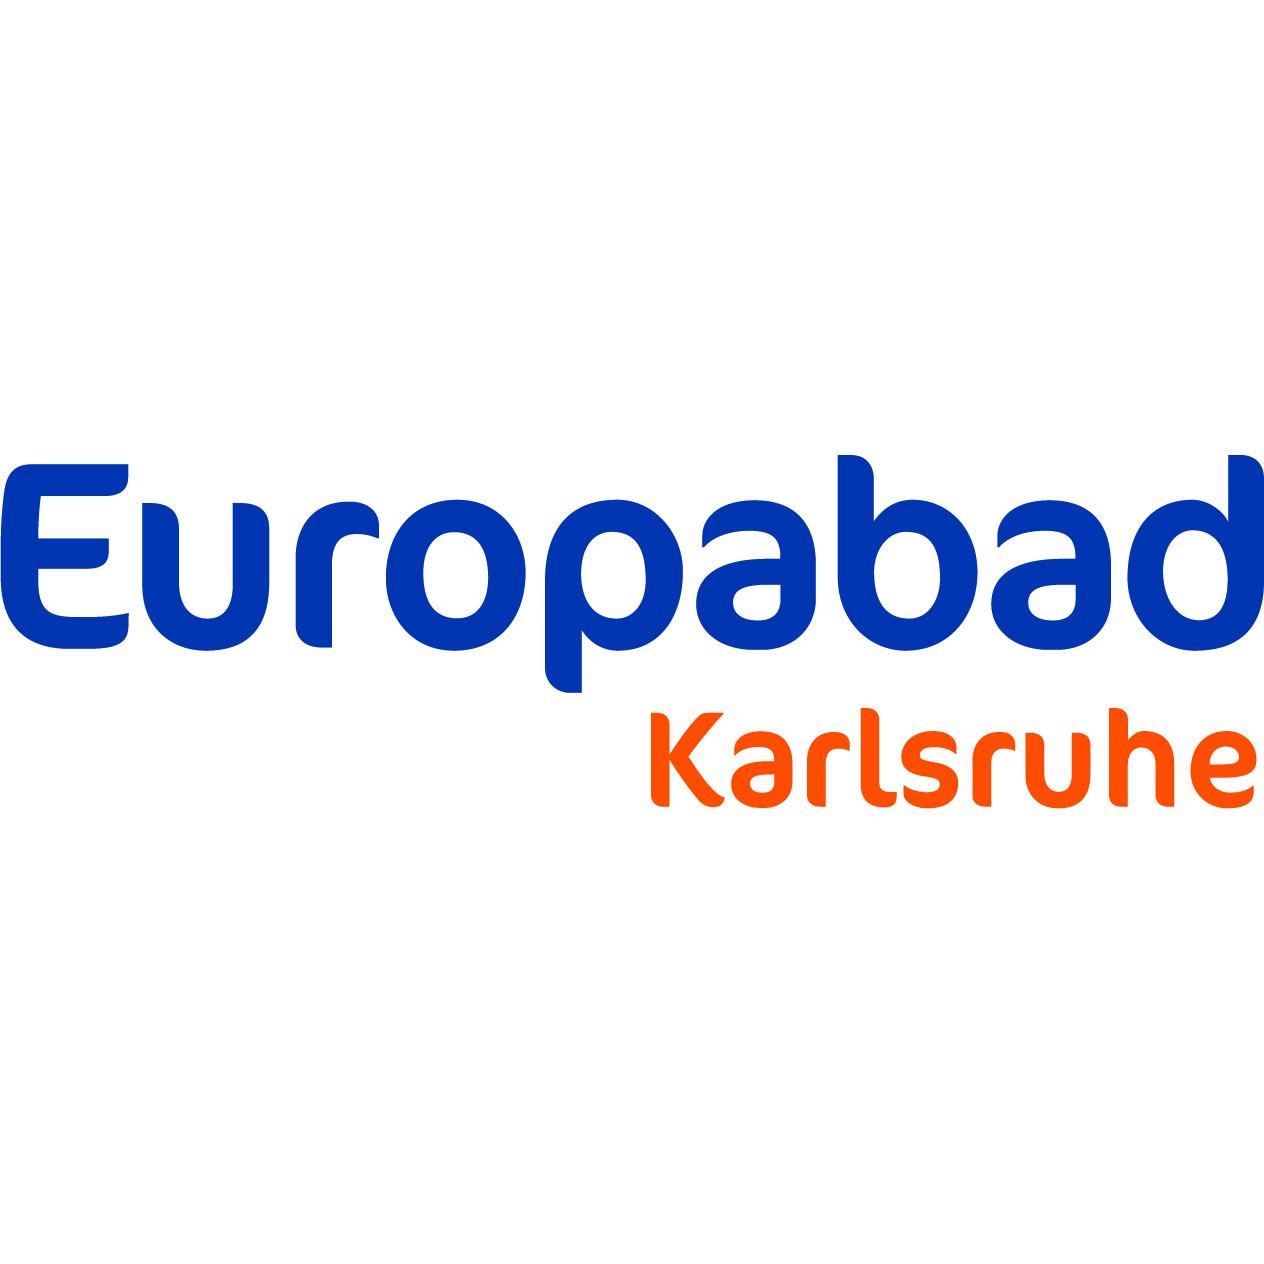 Logo Europabad Karlsruhe